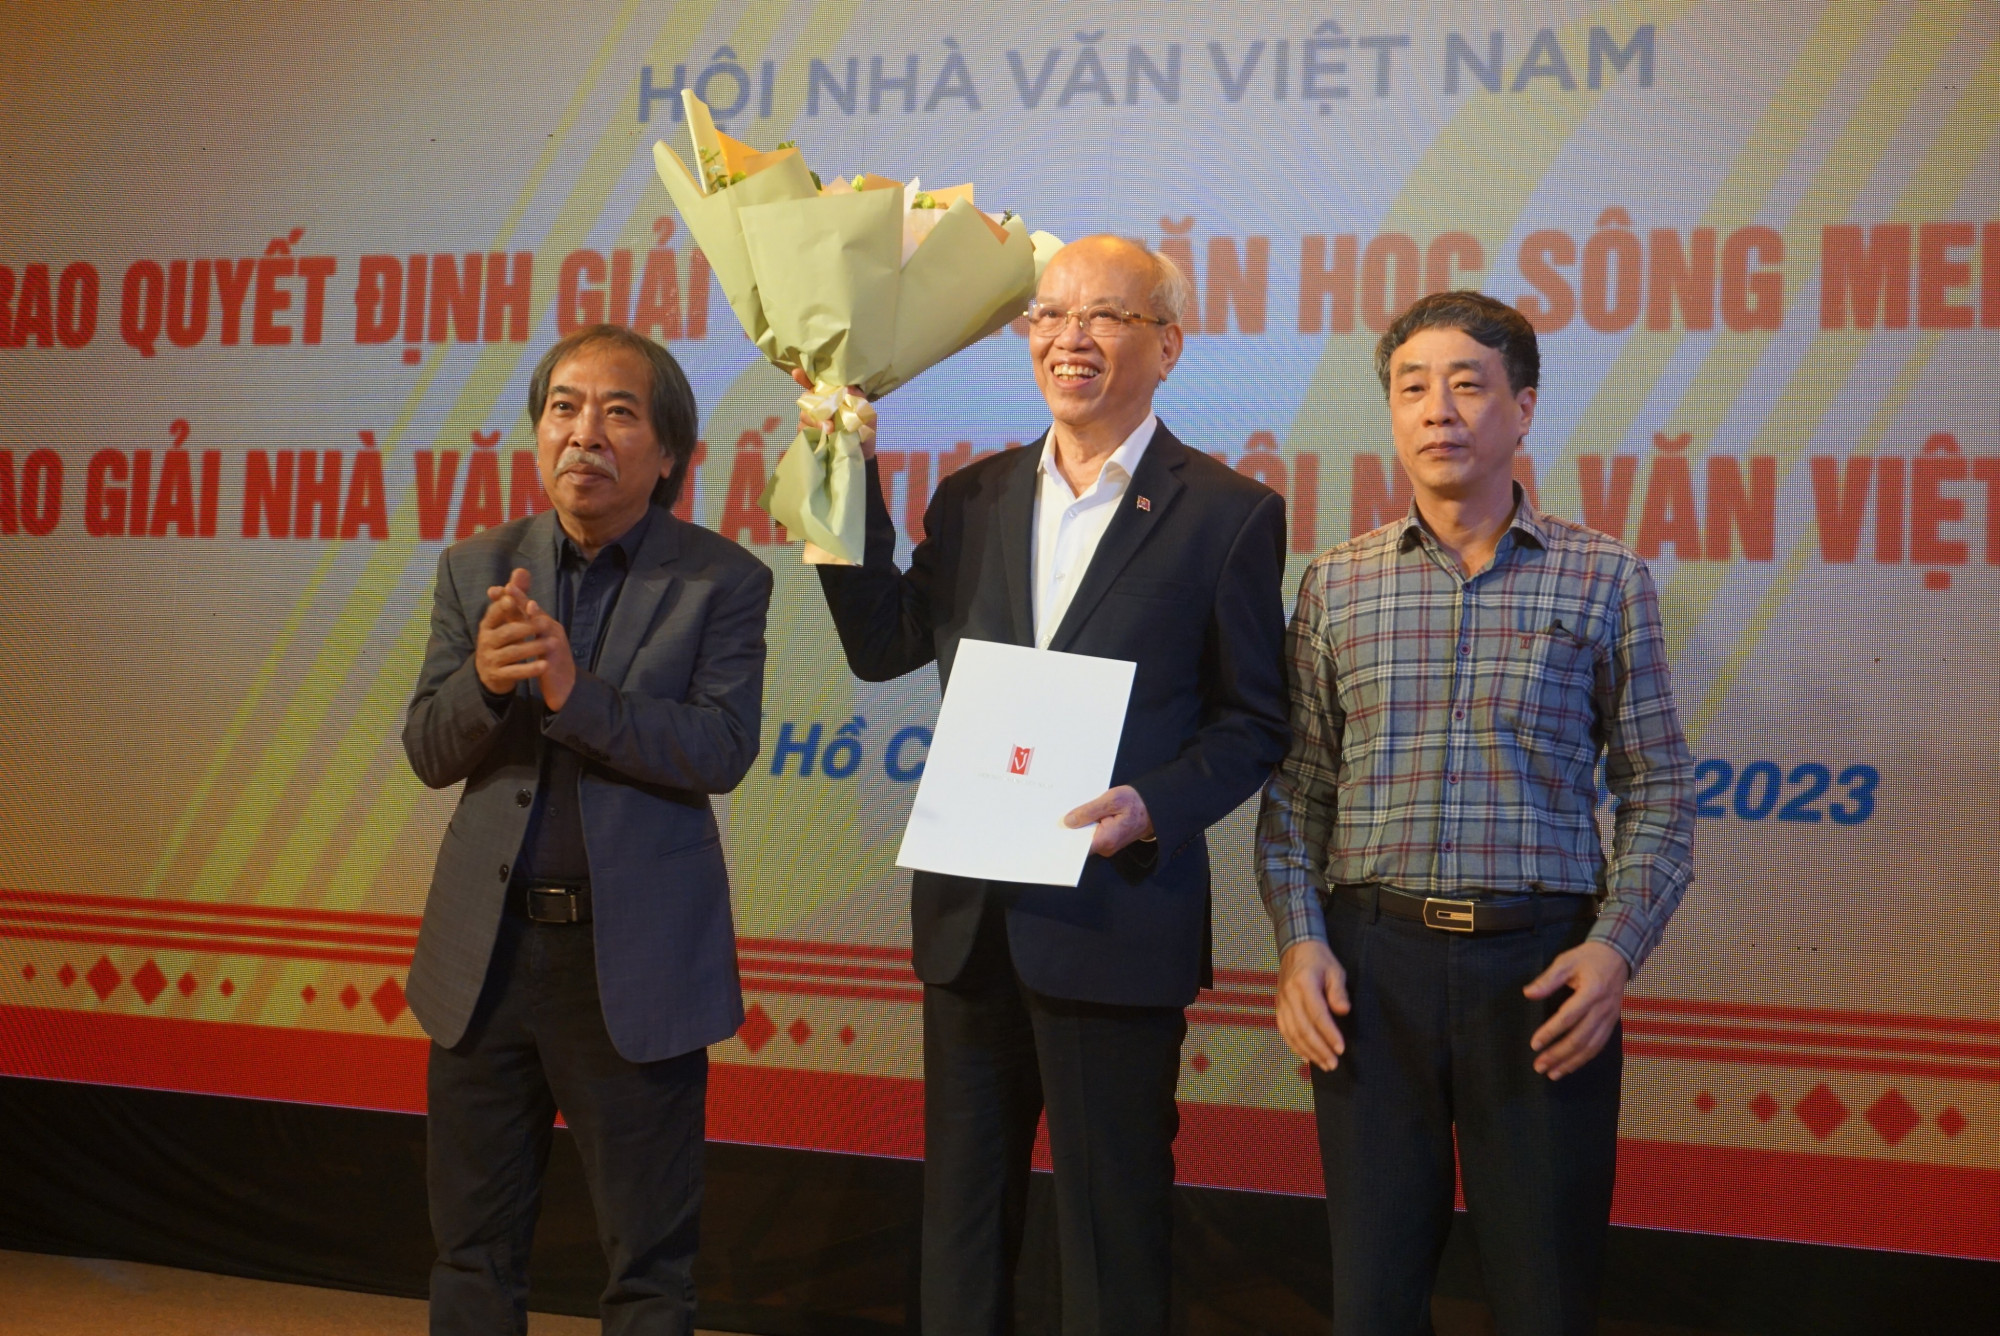 Nhà văn-giáo sư, tiến sĩ Trình Quang Phú nhận giải thưởng 